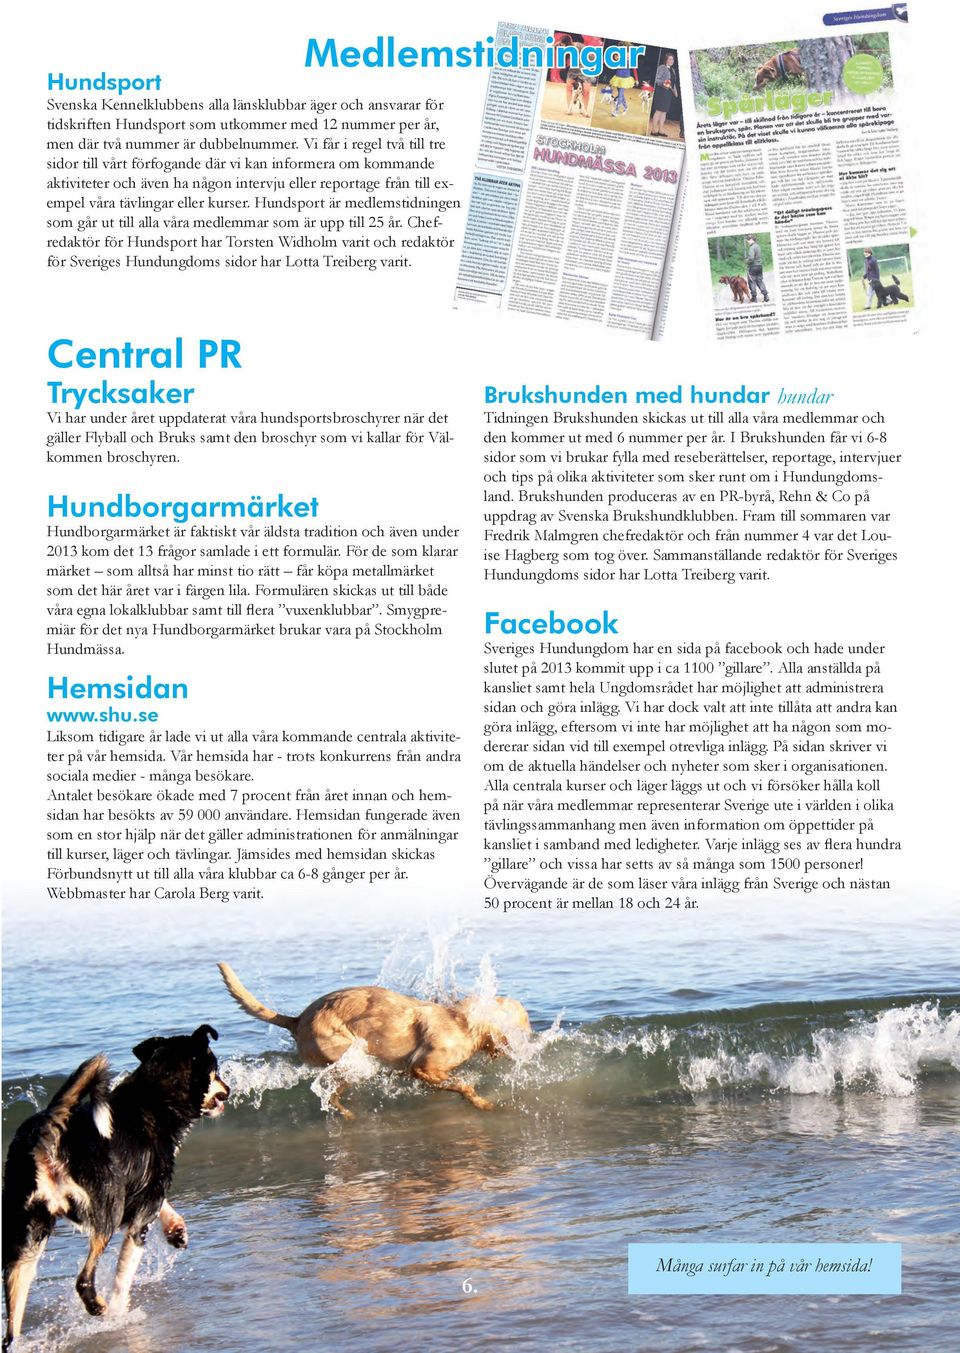 Hundsport är medlemstidningen som går ut till alla våra medlemmar som är upp till 25 år.